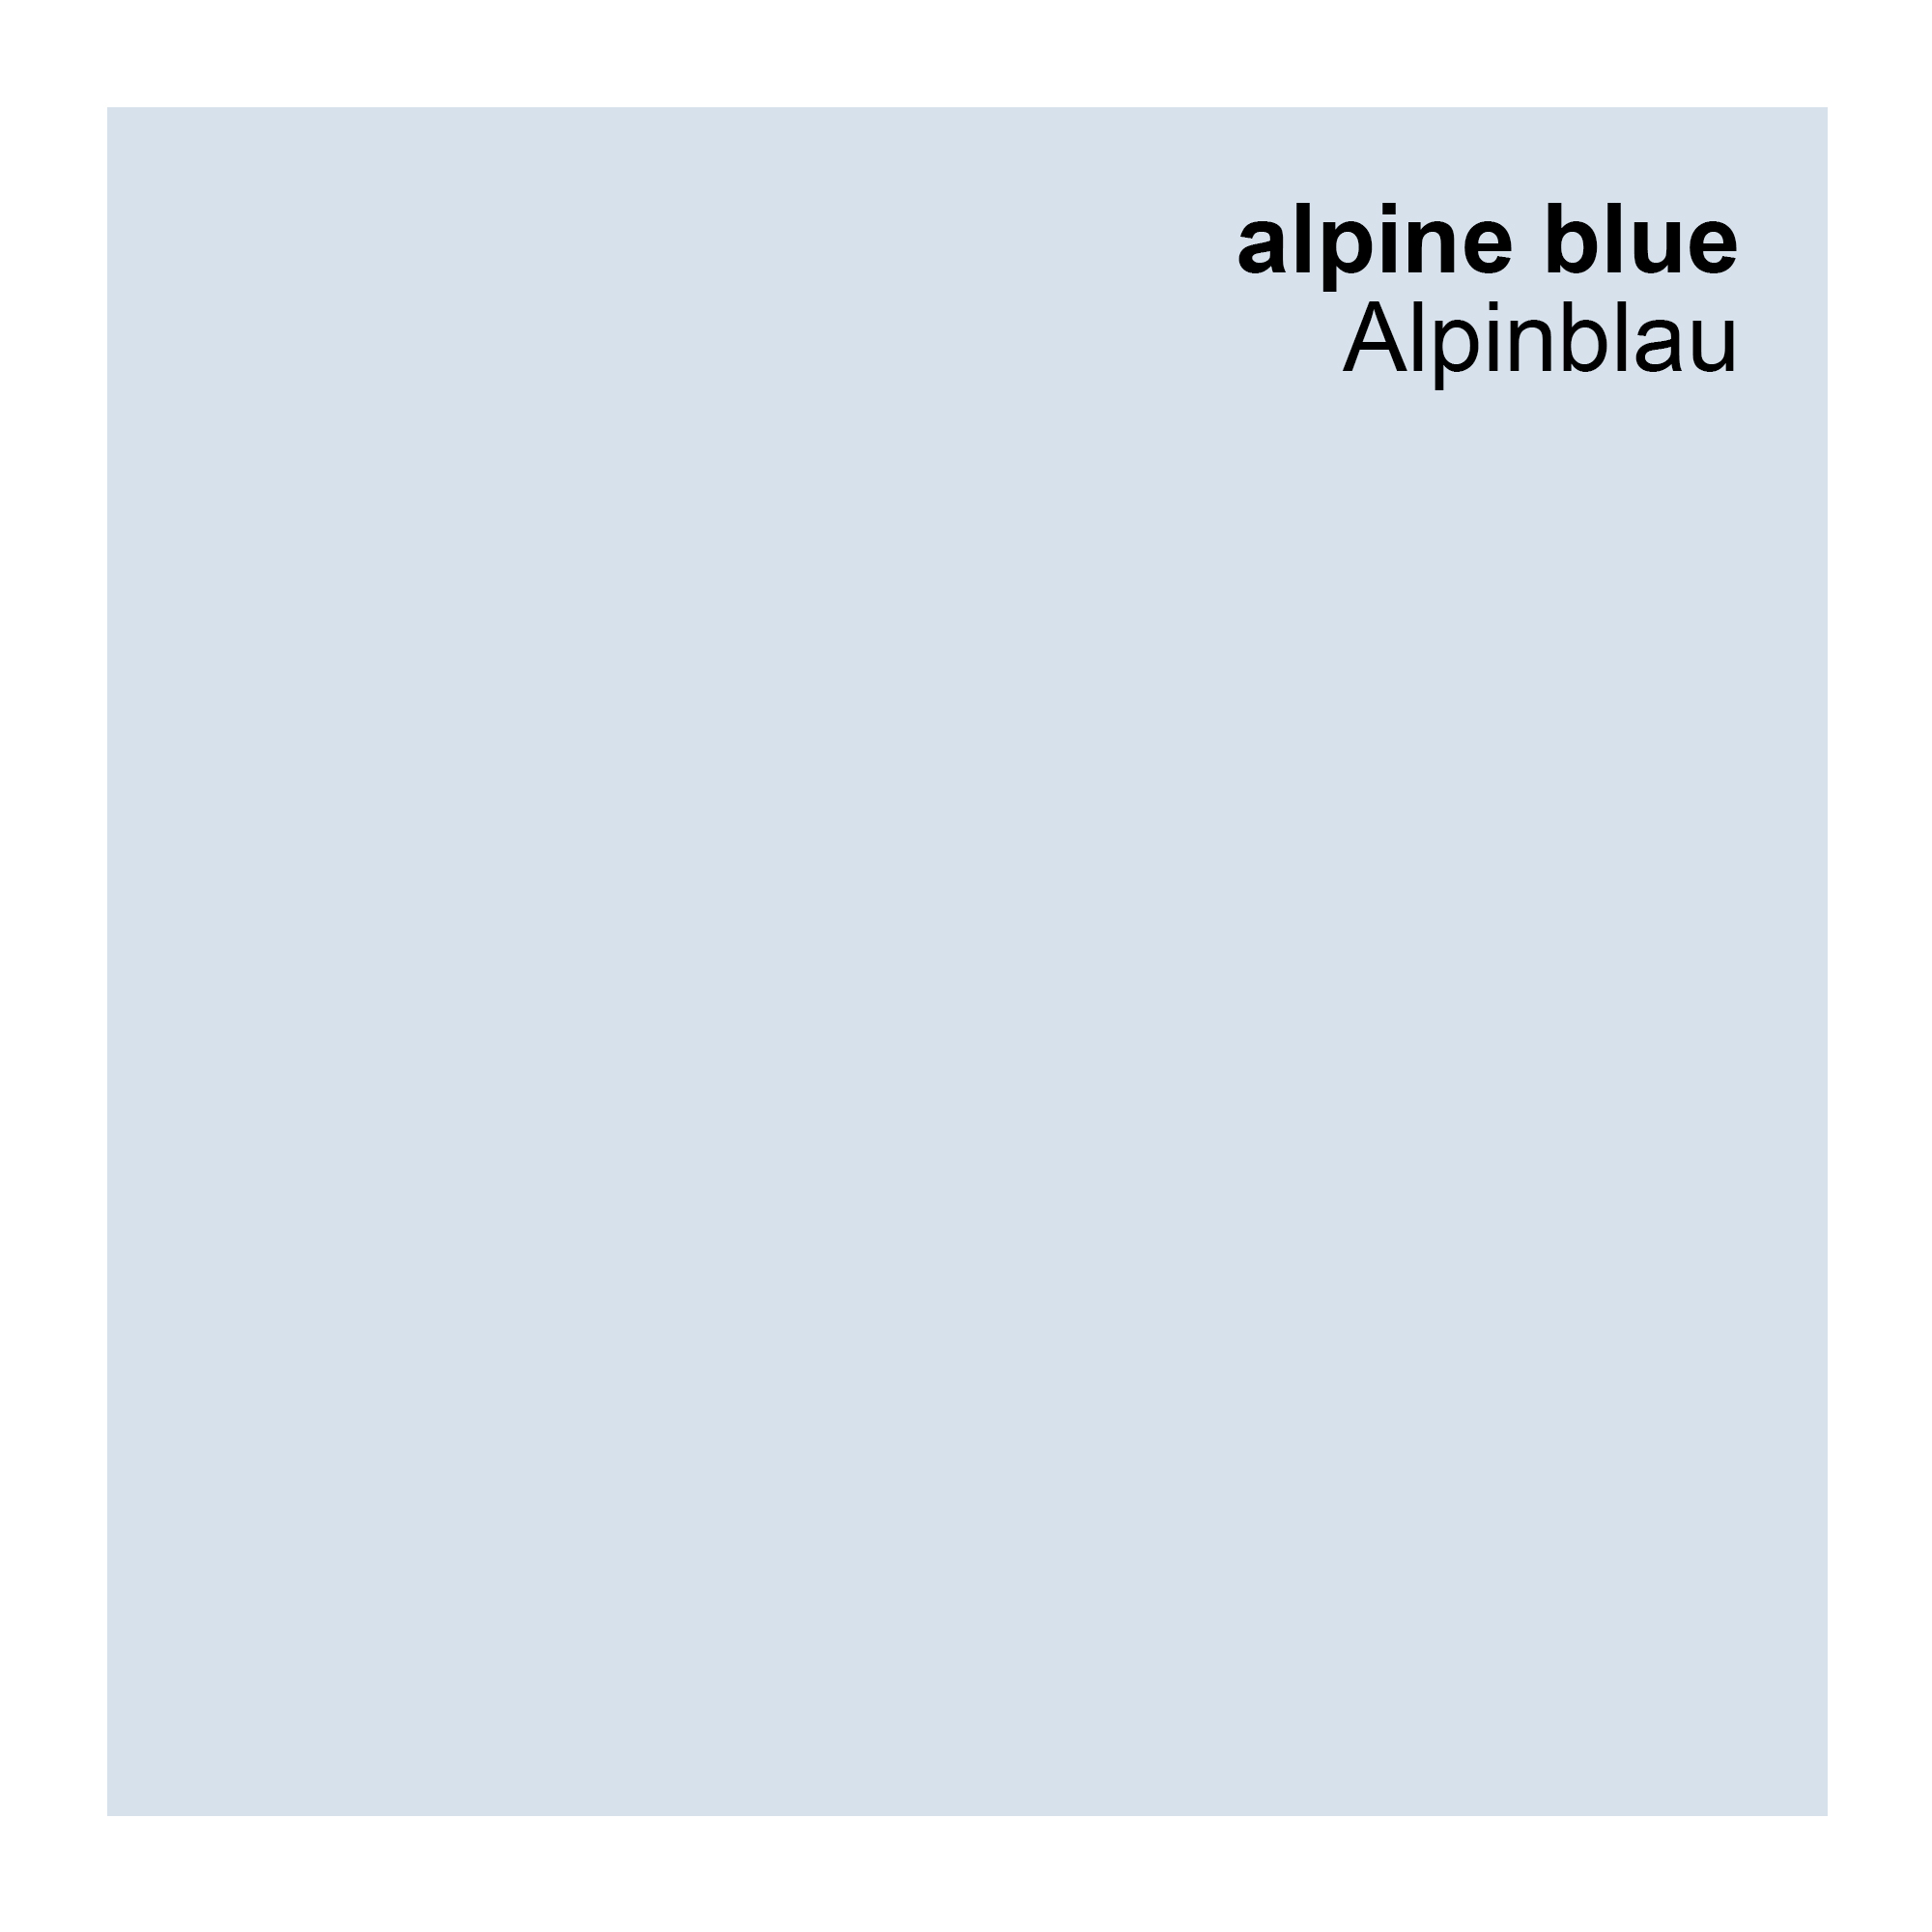 Silikonharz Fassadenfarbe, Alpinblau Blau 10 Liter, hochwertige, matte, wasserabweisende Aussen-Dispersion, sehr guter Regenschutz - Abperleffekt